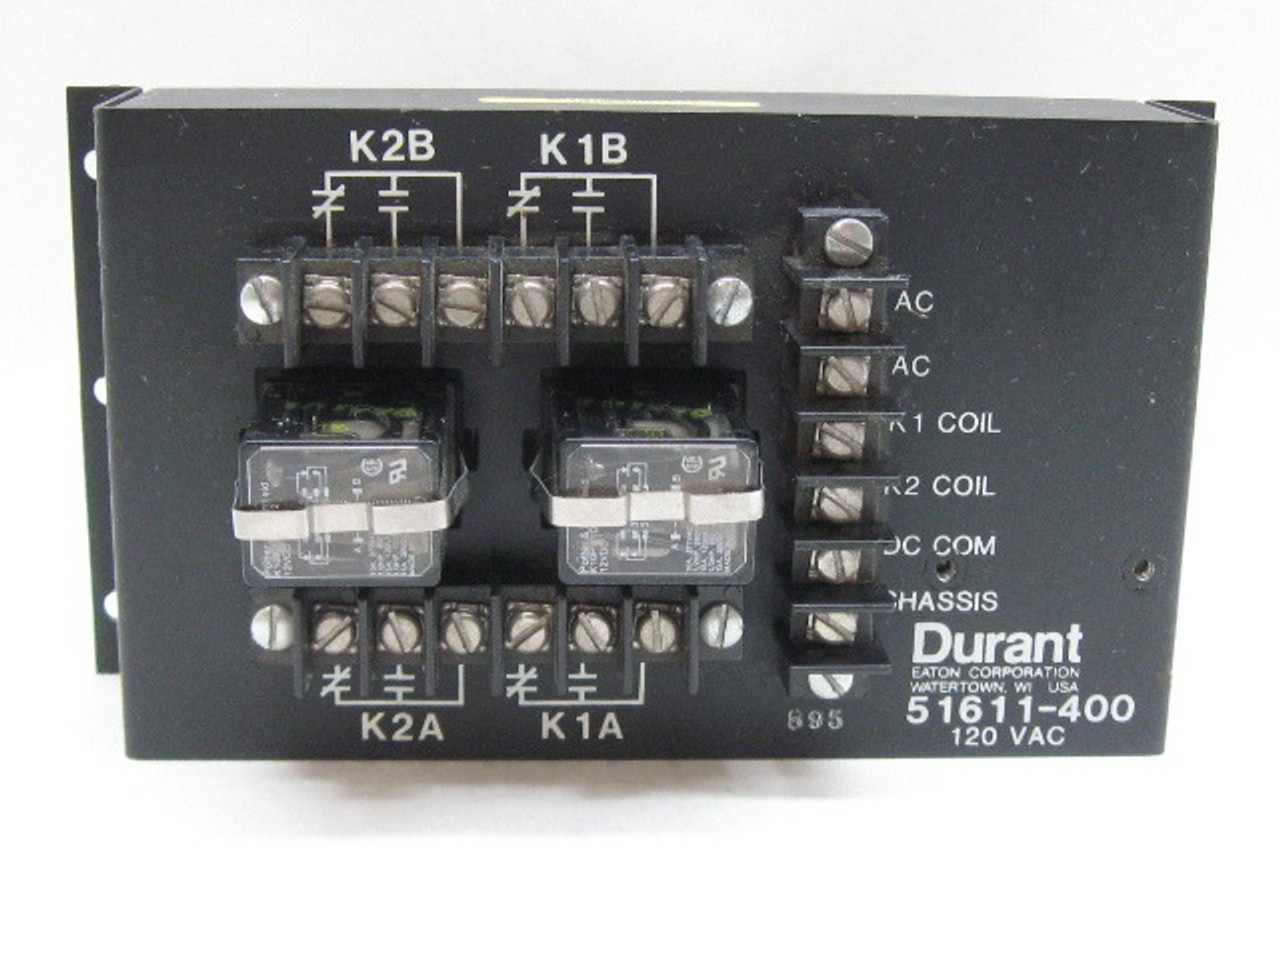 Durant/Eaton Corporation 51611-400 Relay Accessory Kit 120 Vac